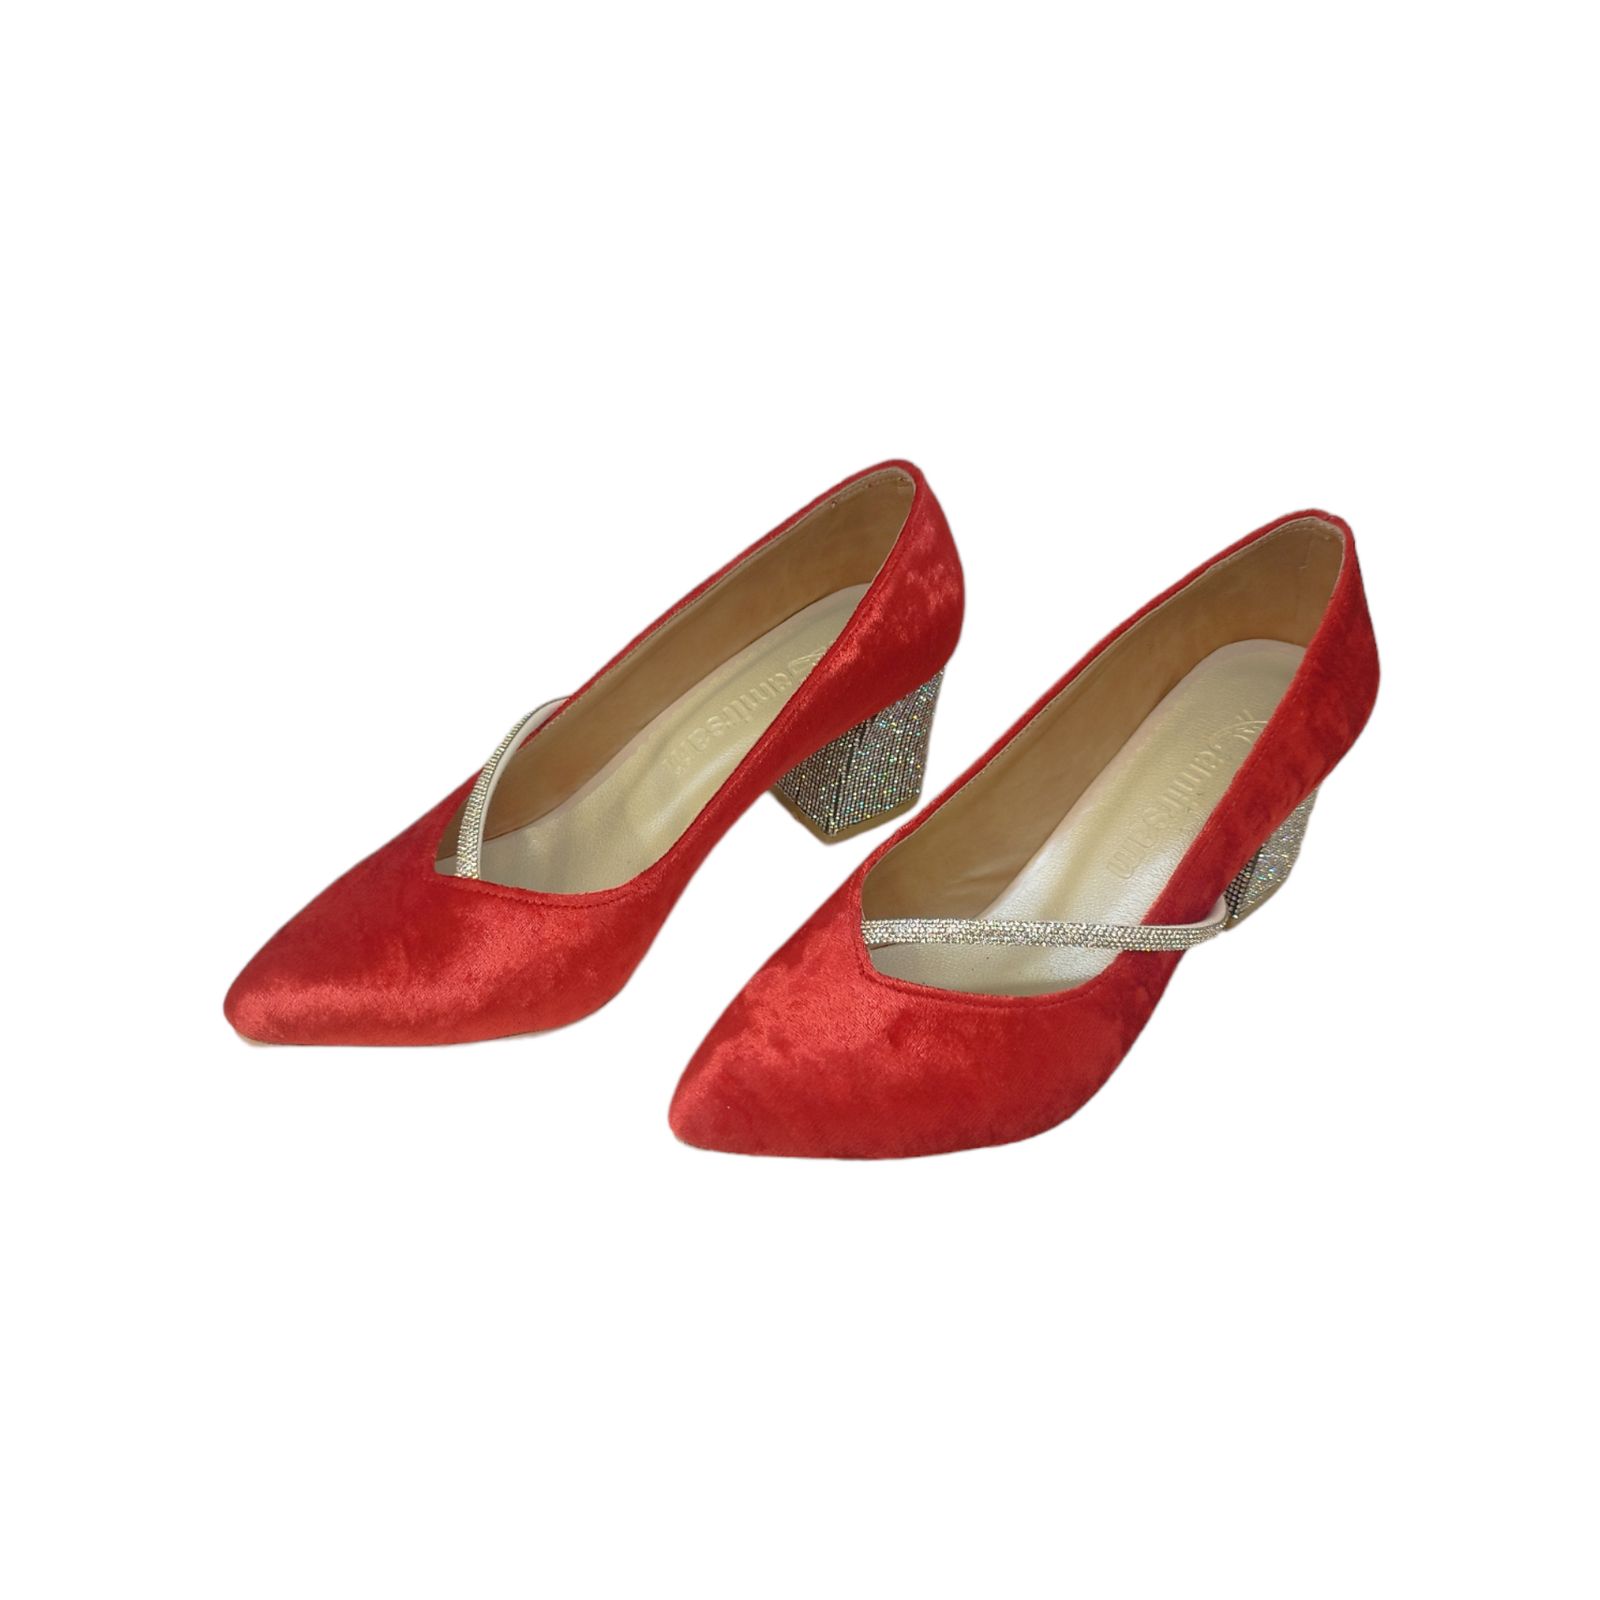 کفش زنانه مدل ZPOM 06 مخمل نگین دار رنگ قرمز -  - 2